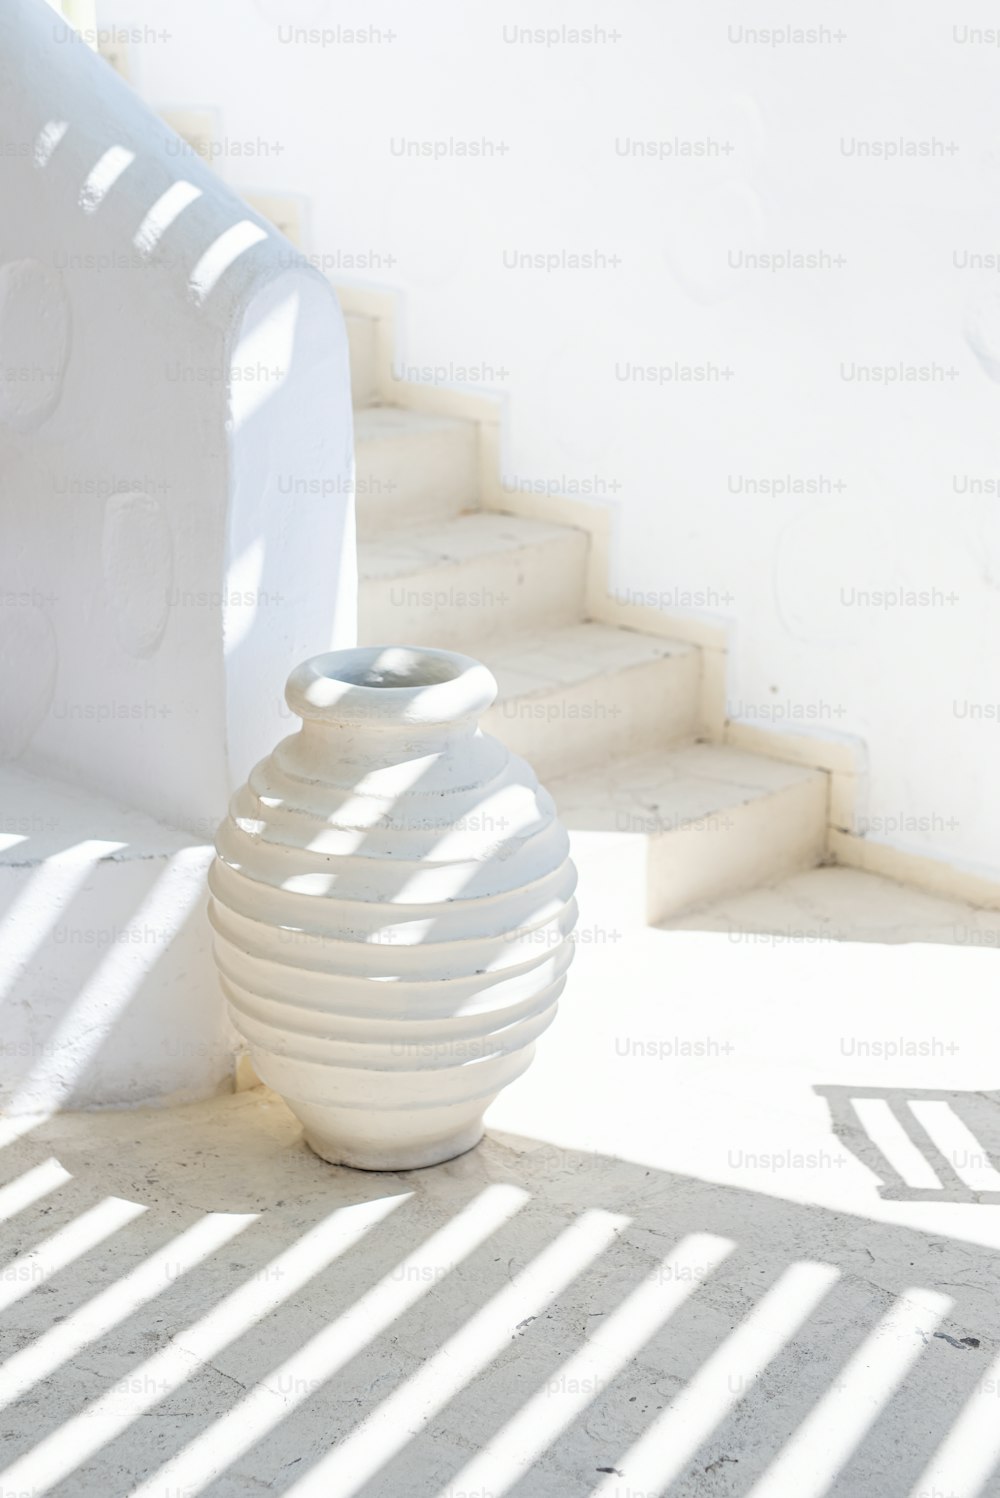 un vaso bianco seduto a terra accanto ad alcune scale